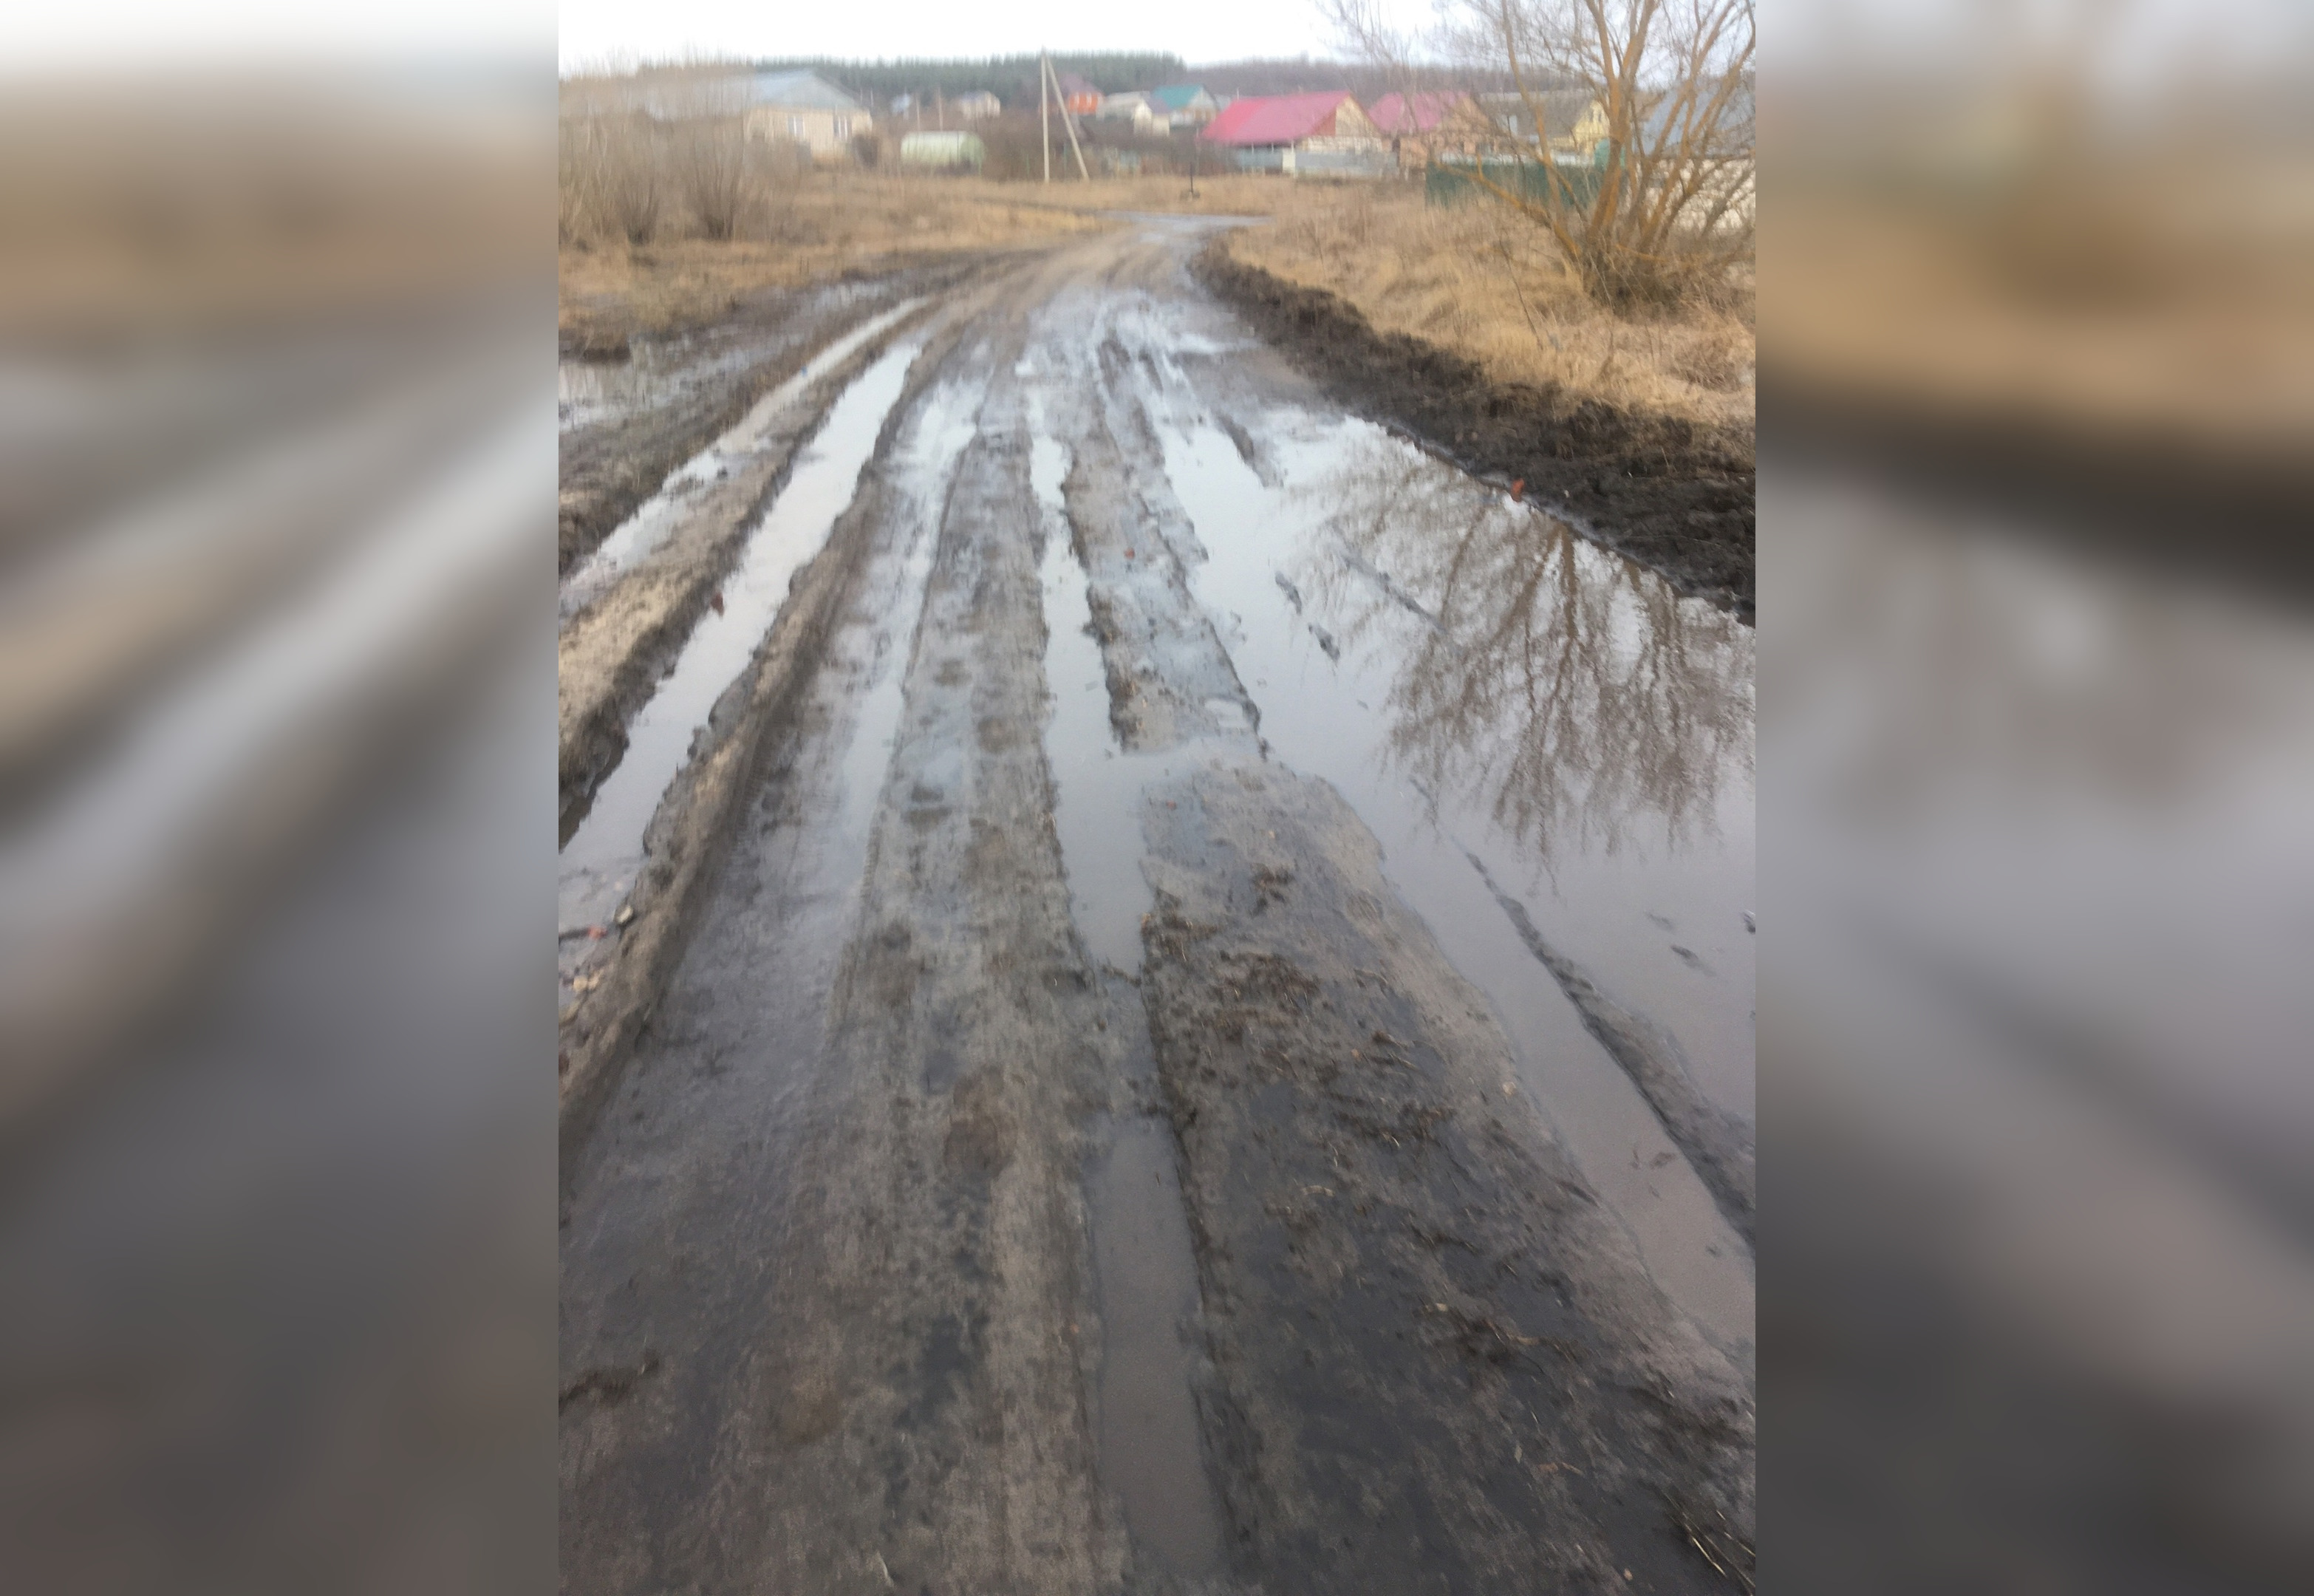 Пензенцам рассказали, когда отремонтируют дорогу в Мокшане до села Лемзяйка